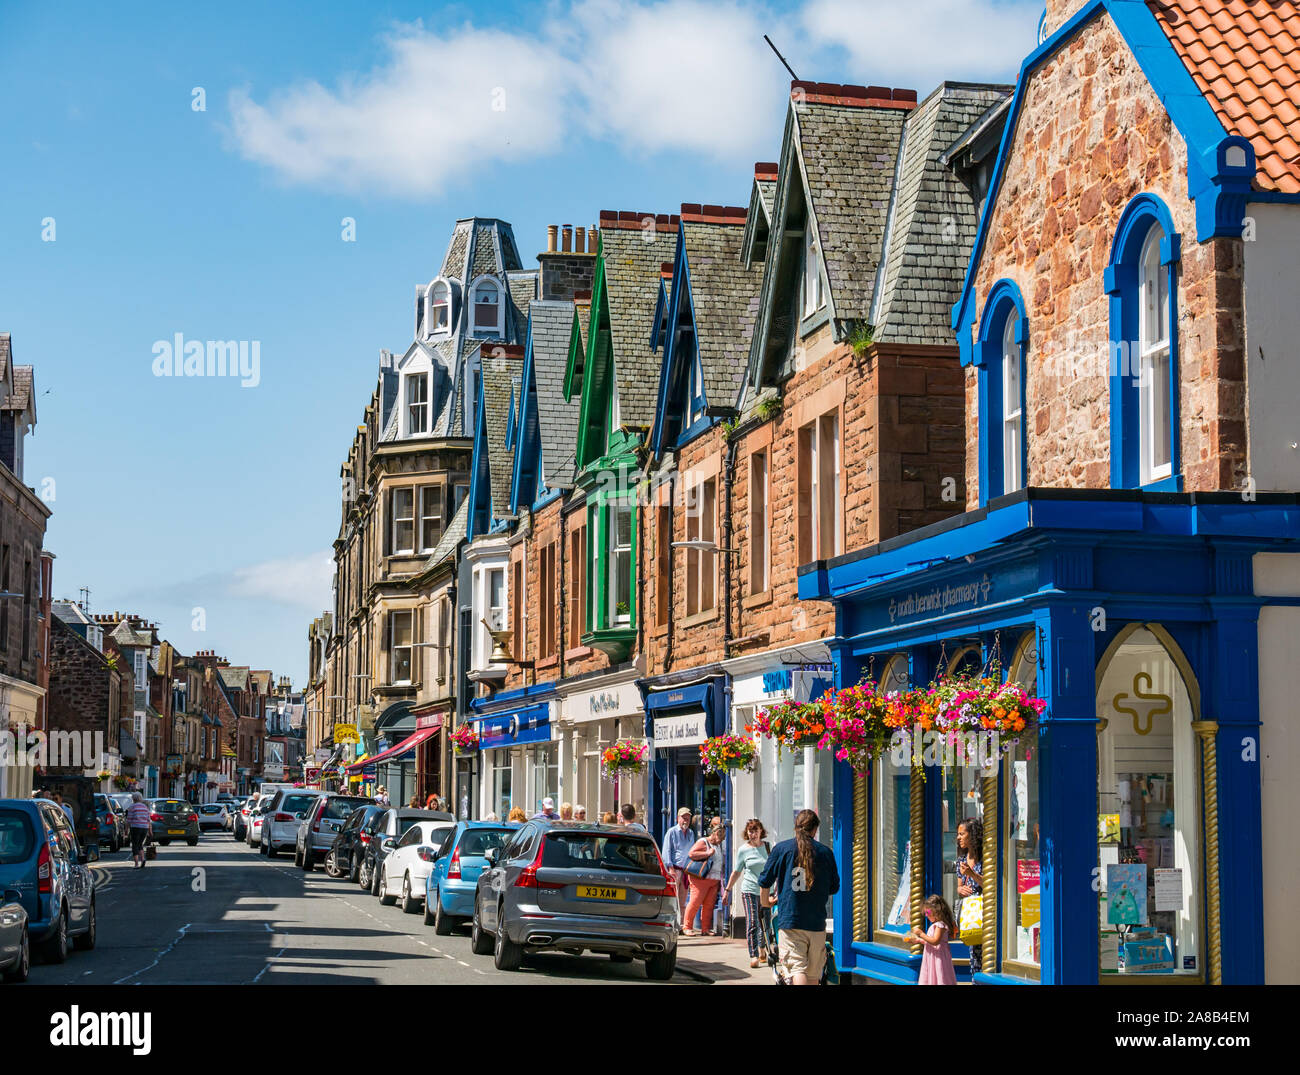 Concurrida calle angosta con autos estacionados y gente de compras, High Street, North Berwick, East Lothian, Escocia, Reino Unido Foto de stock